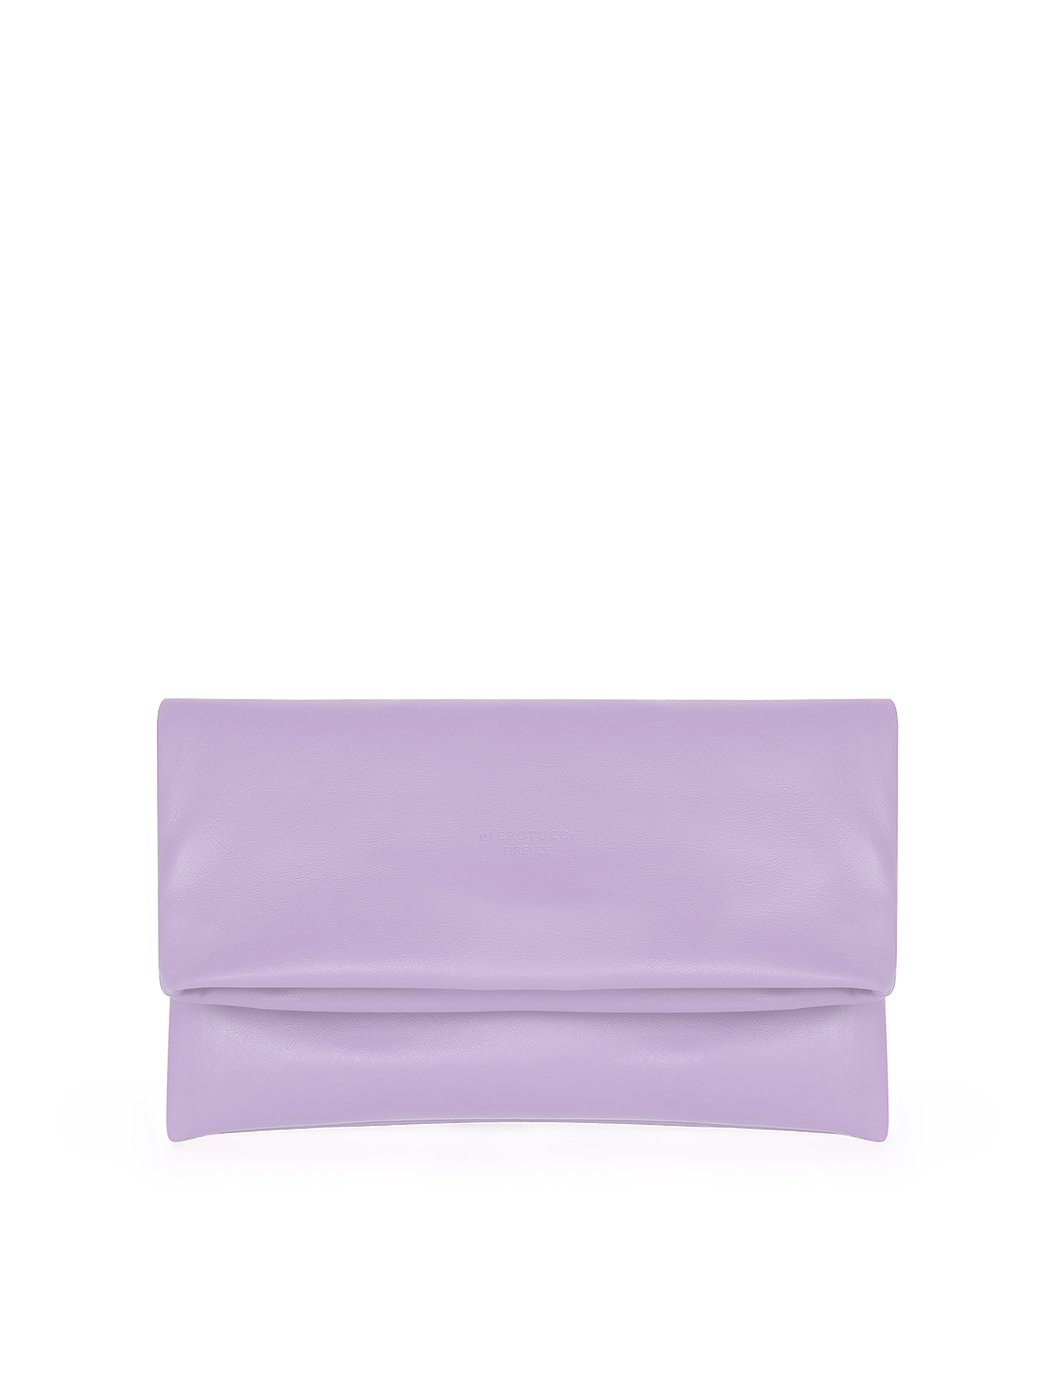 Кожаный клатч из натуральной кожи лилового цвета